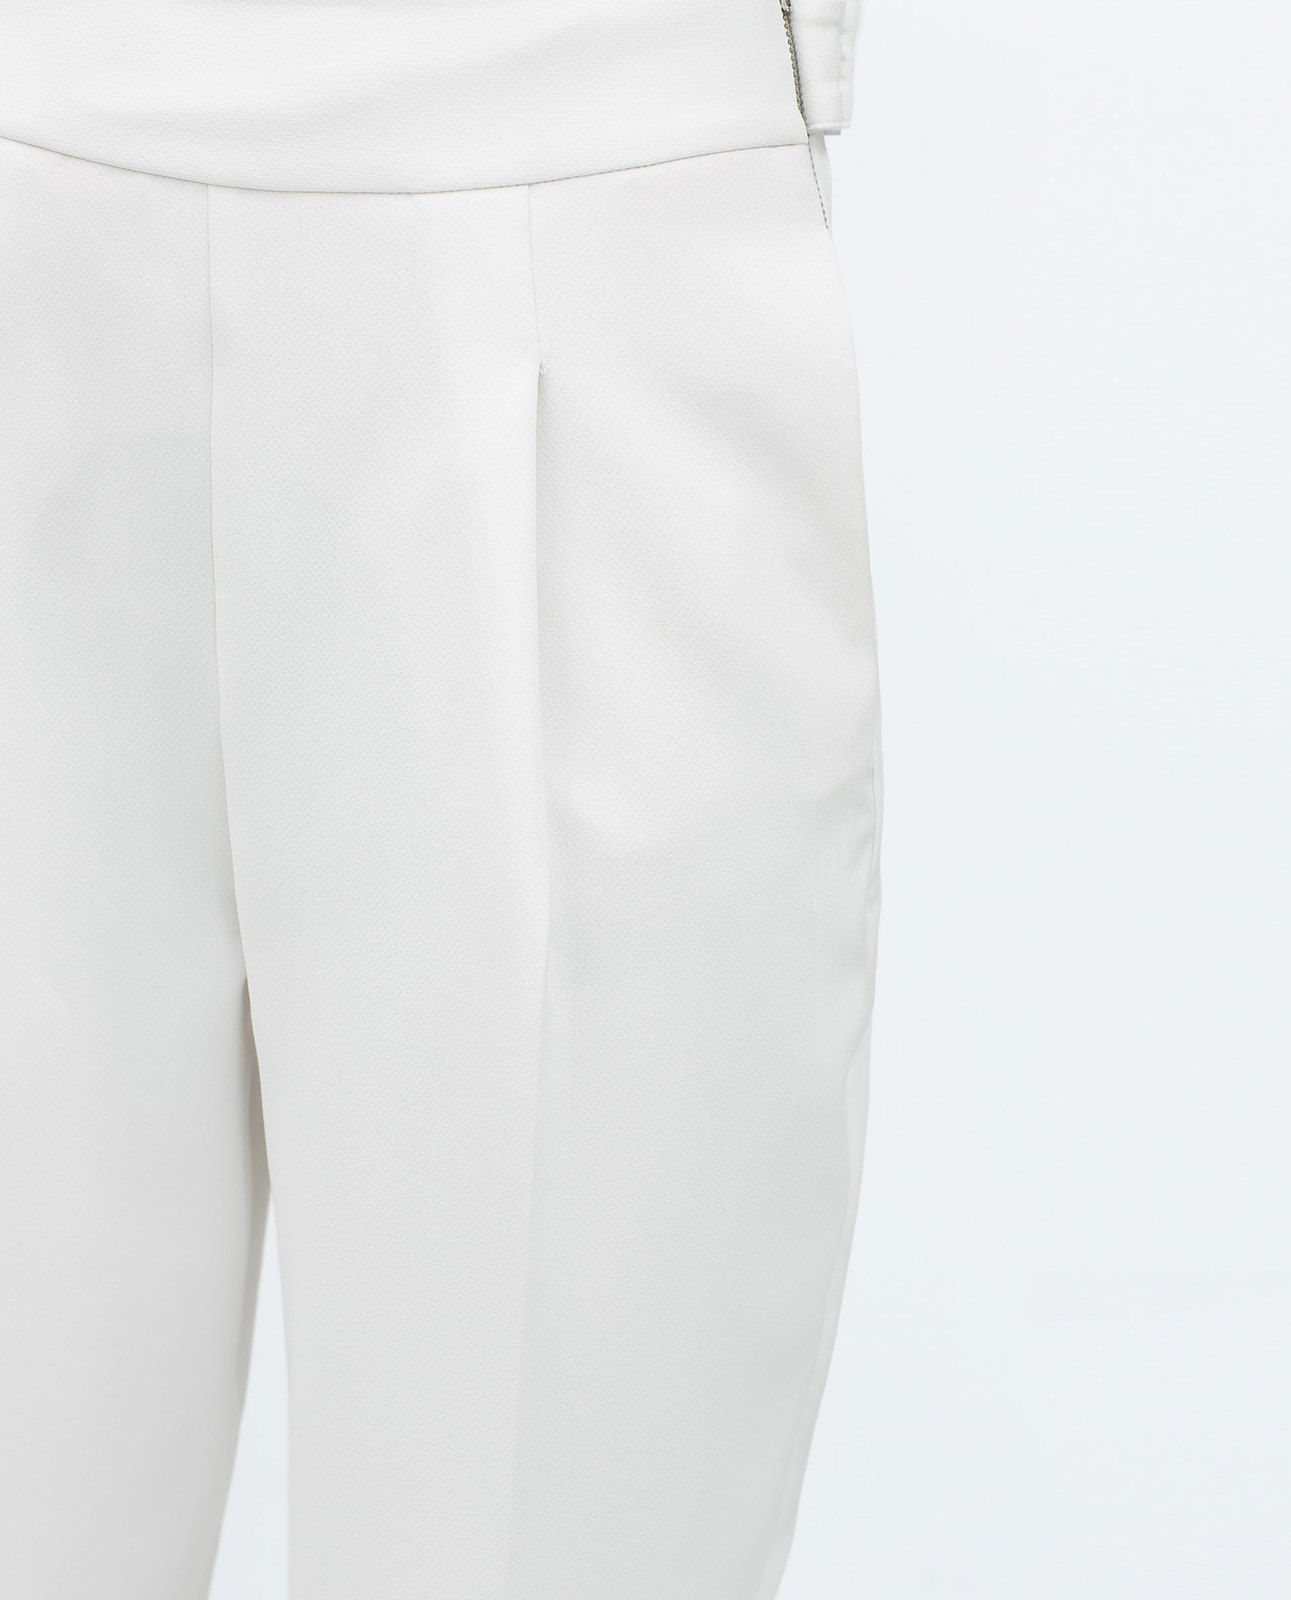 Zara fehér csíkkal díszített rövid ujjú pulóver 2015.02.23 #74530 fotója